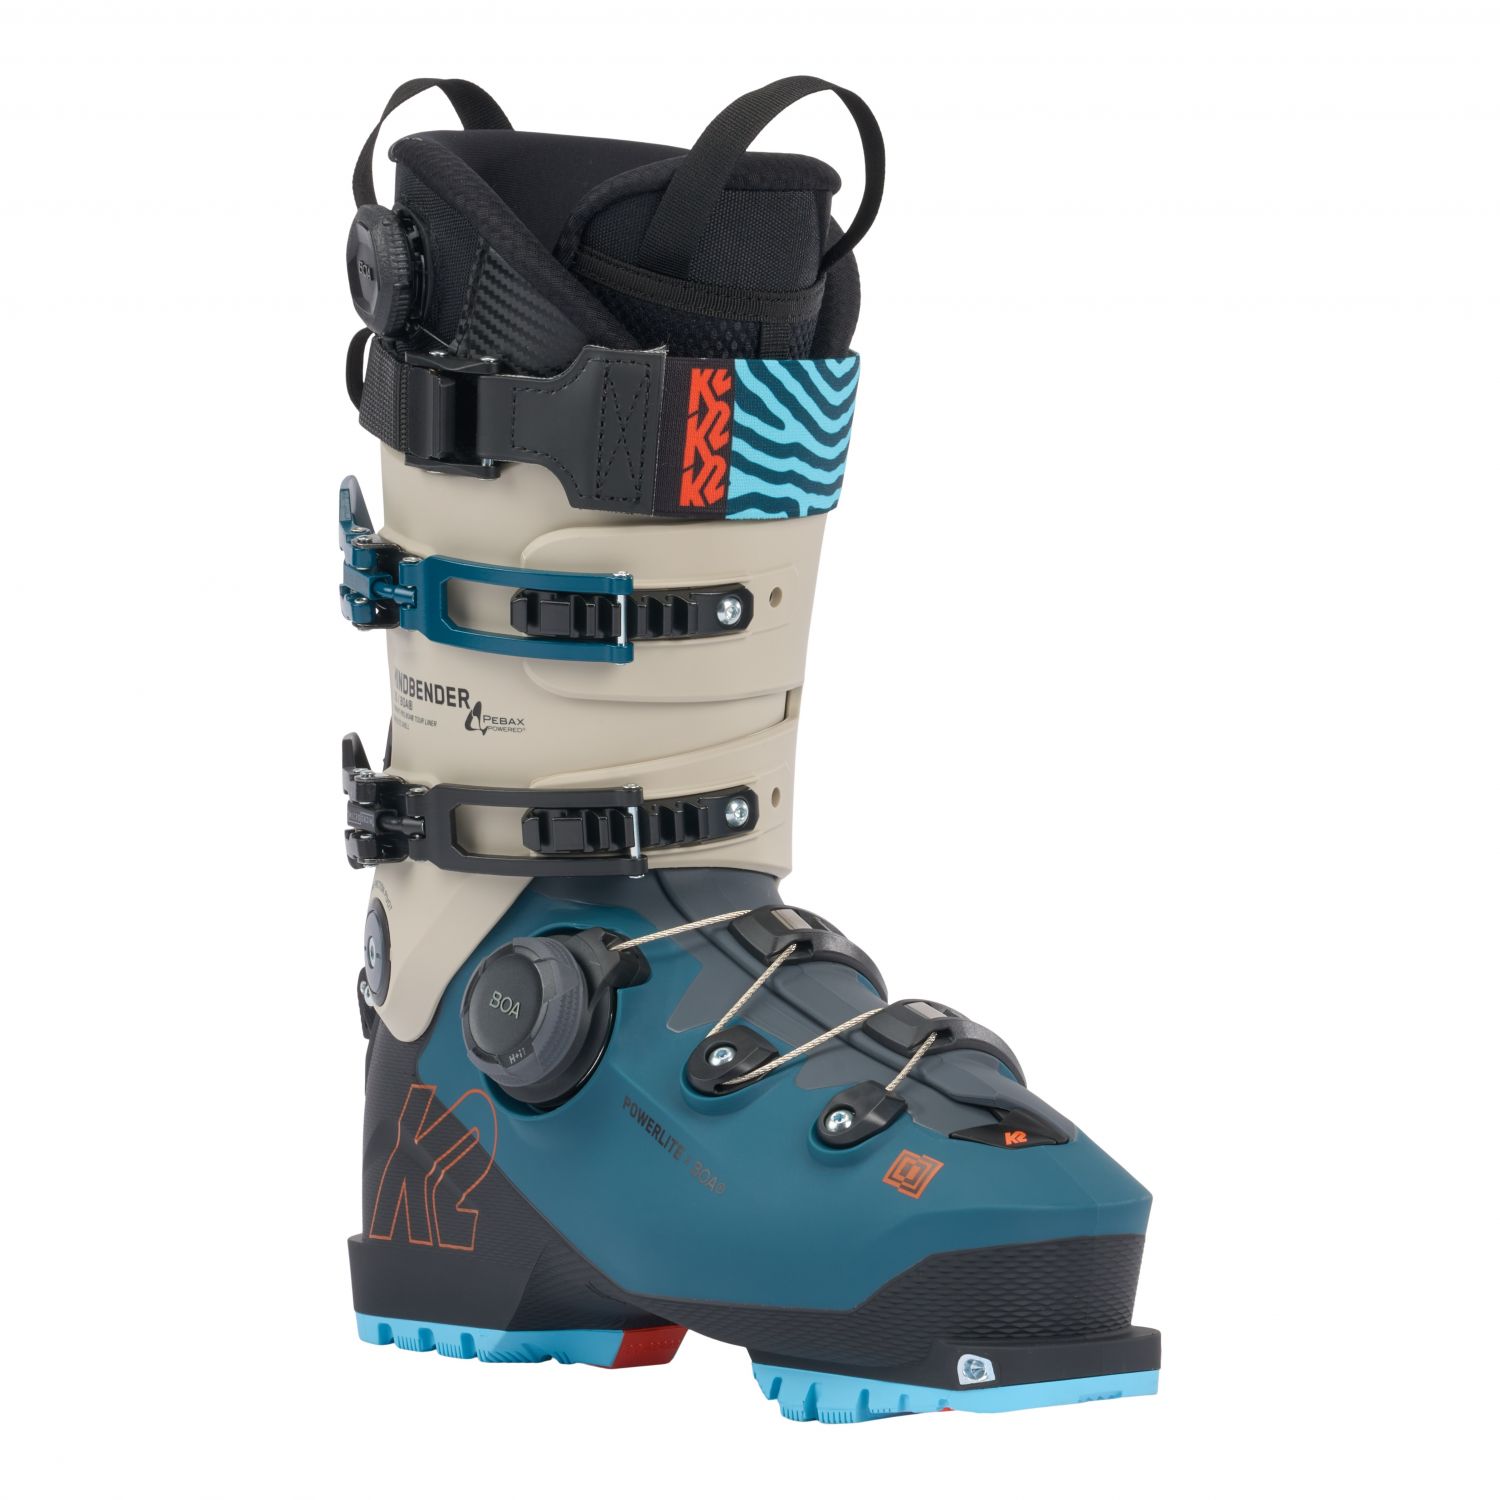 K2 Mindbender 130 BOA, skischoenen, meneer, blauw/grijs